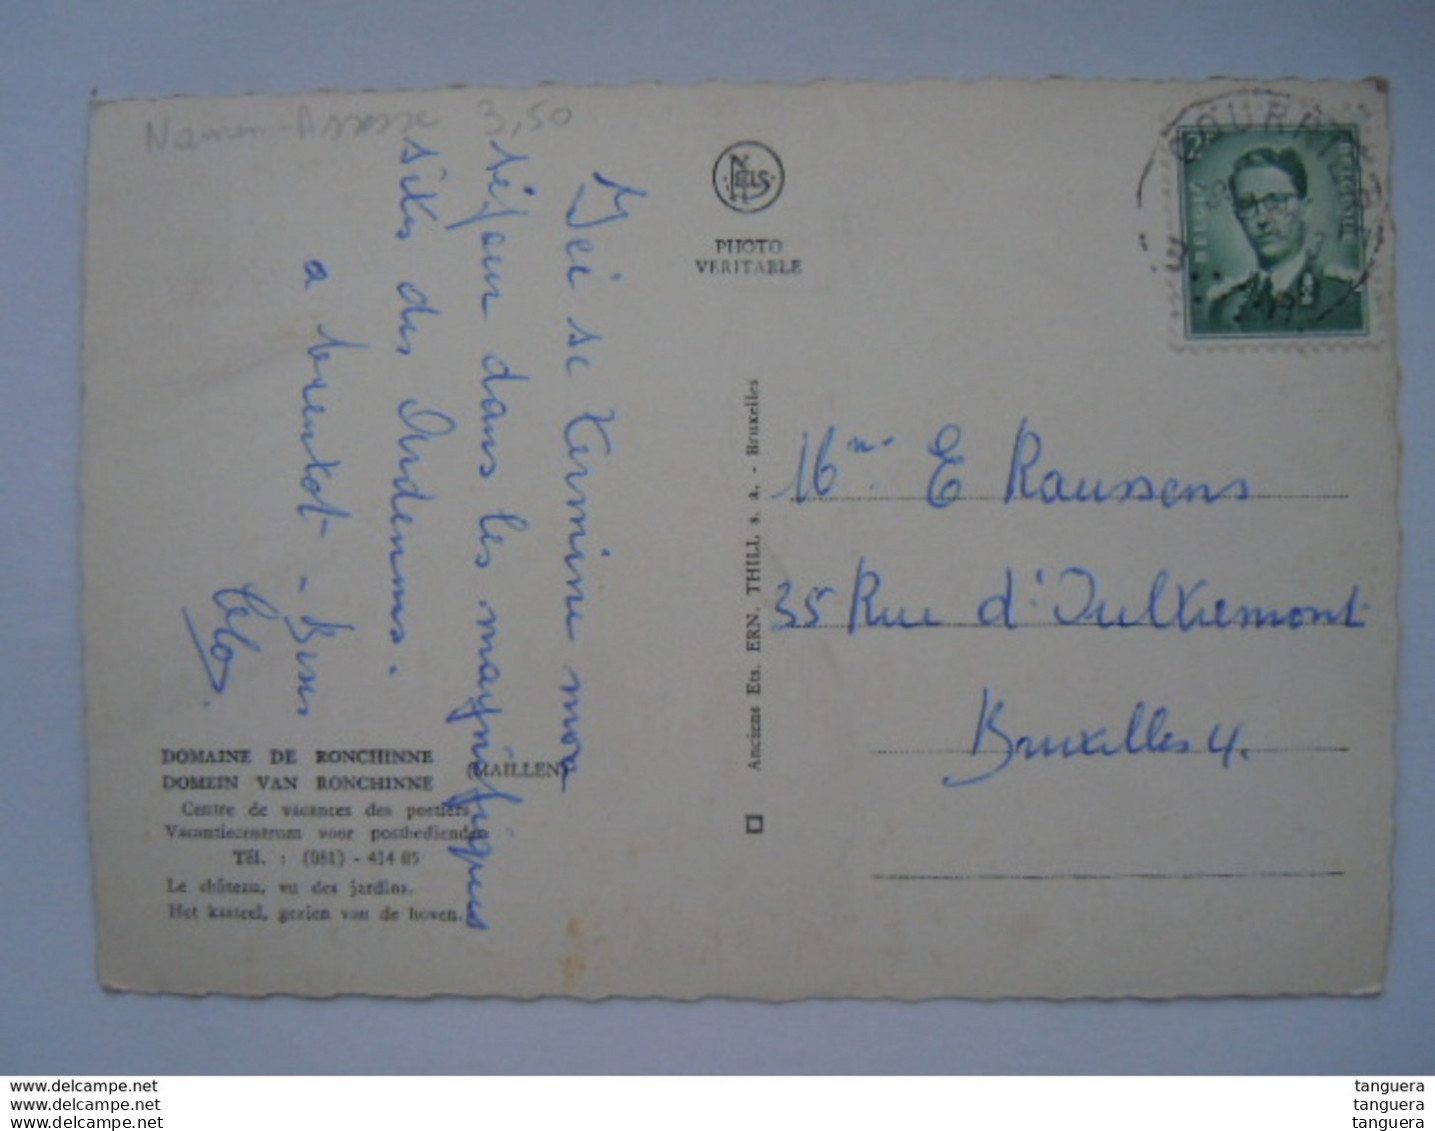 Domaine De Ronchinne (Maillen) Centre De Vacanes Des Postiers Vacantiecentrum Voor Postbedienden Circulée 1963 Edit Thil - Assesse